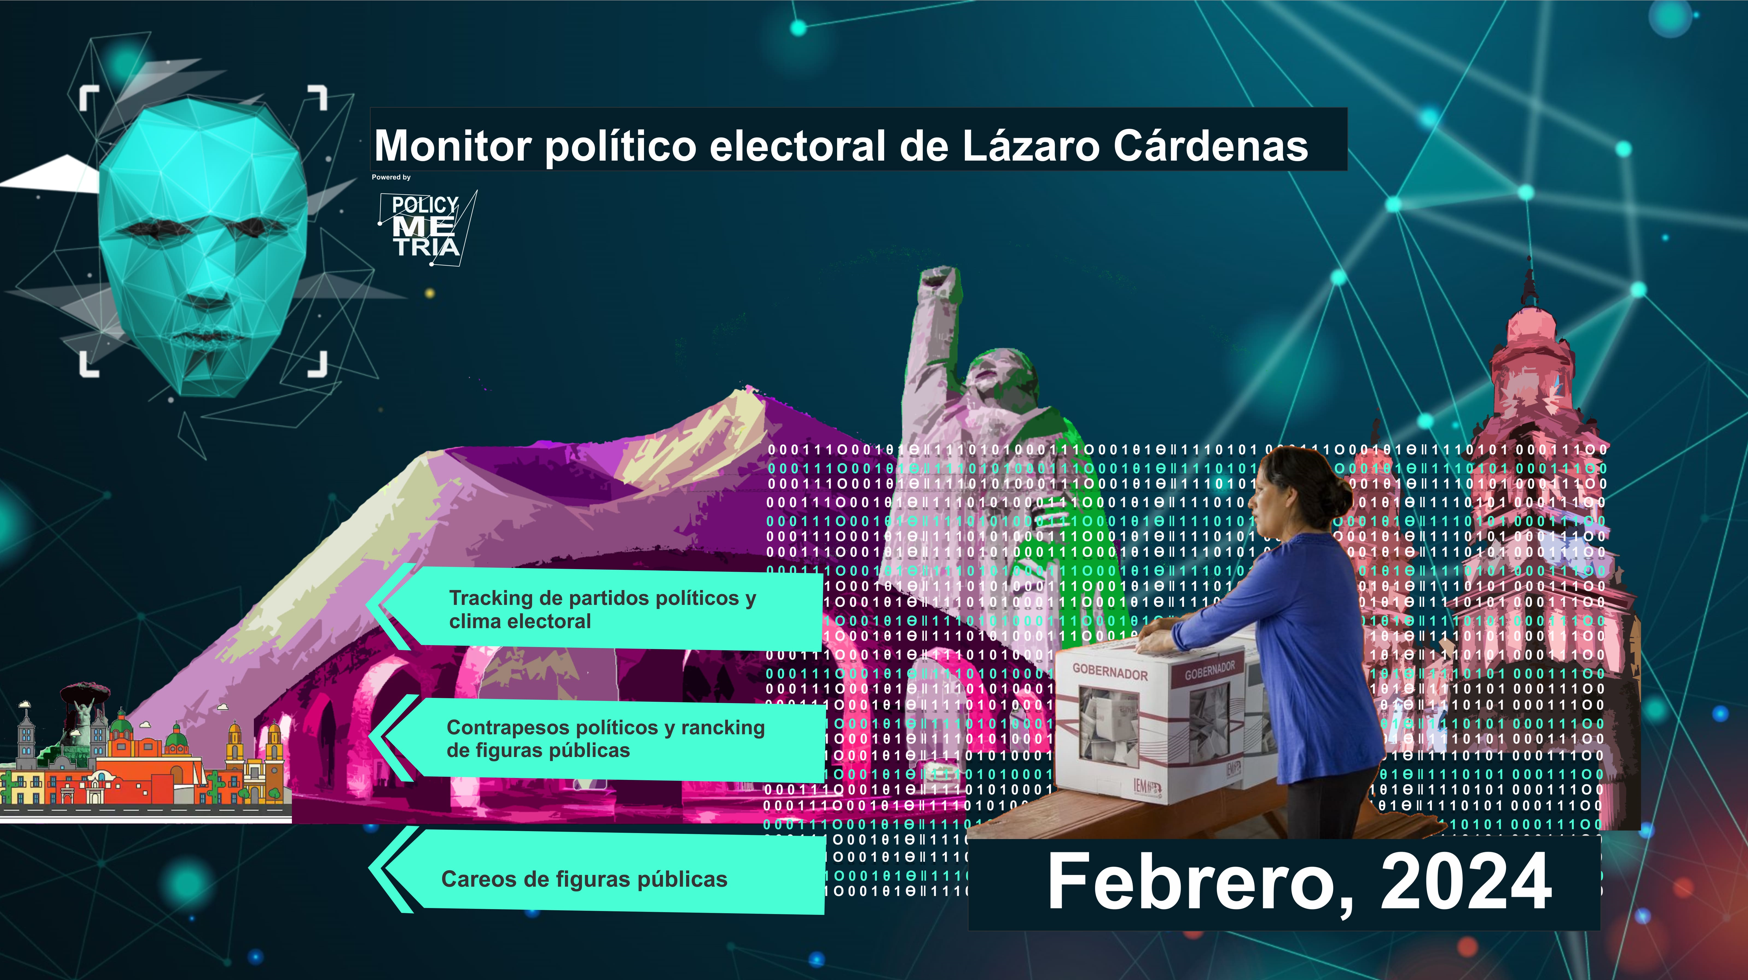 Monitor Político electoral de Lázaro Cárdenas, febrero 2024